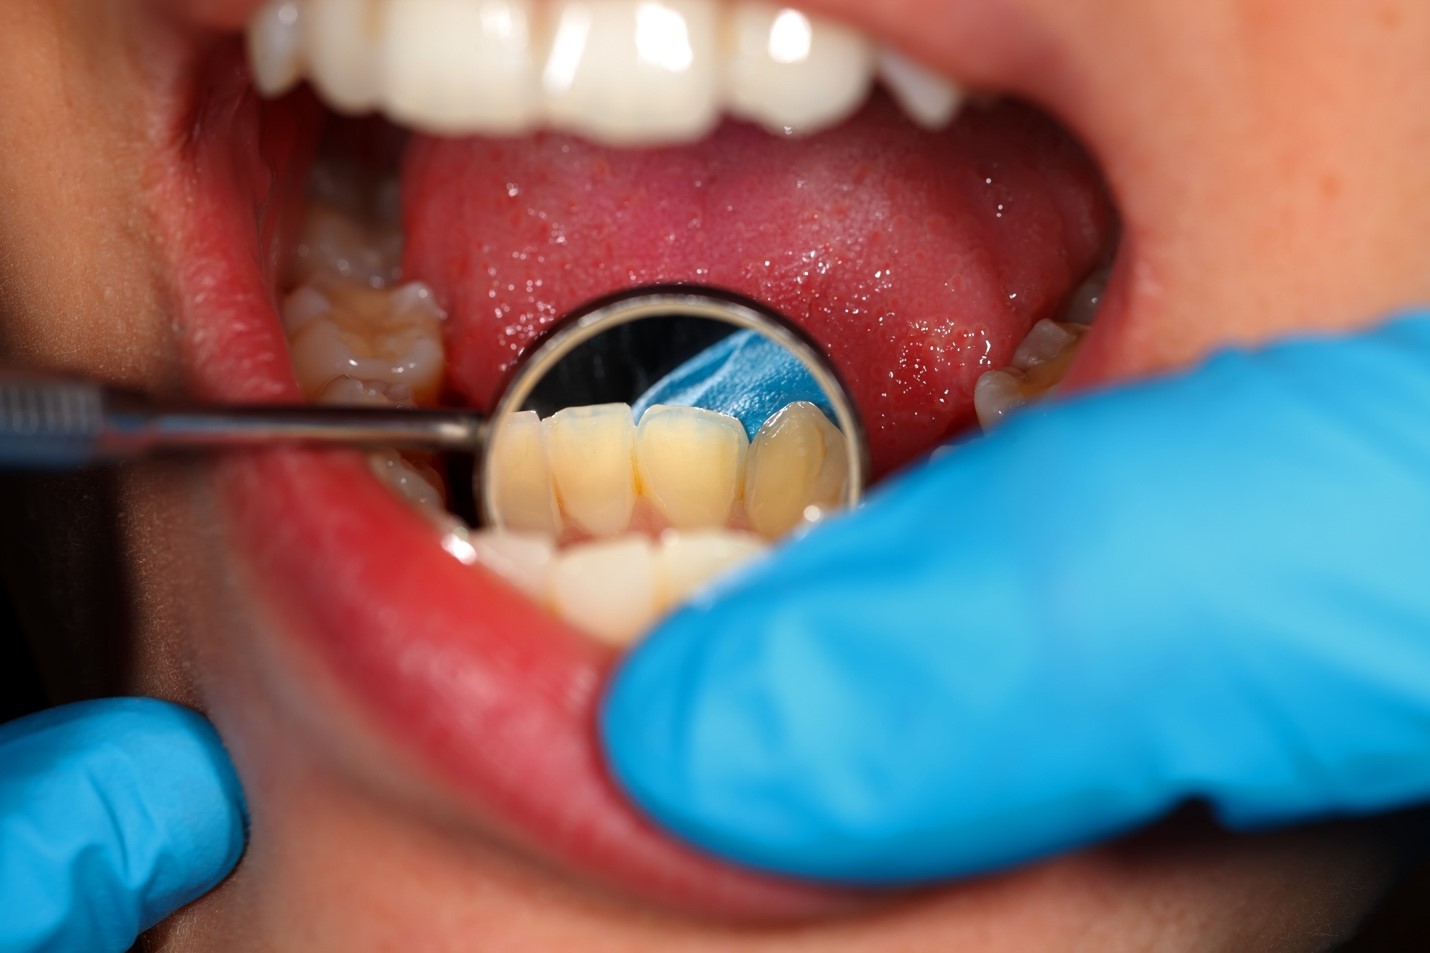 Apakah Karang Gigi Menyebabkan Bau Mulut? Temukan Jawabannya di Sini!